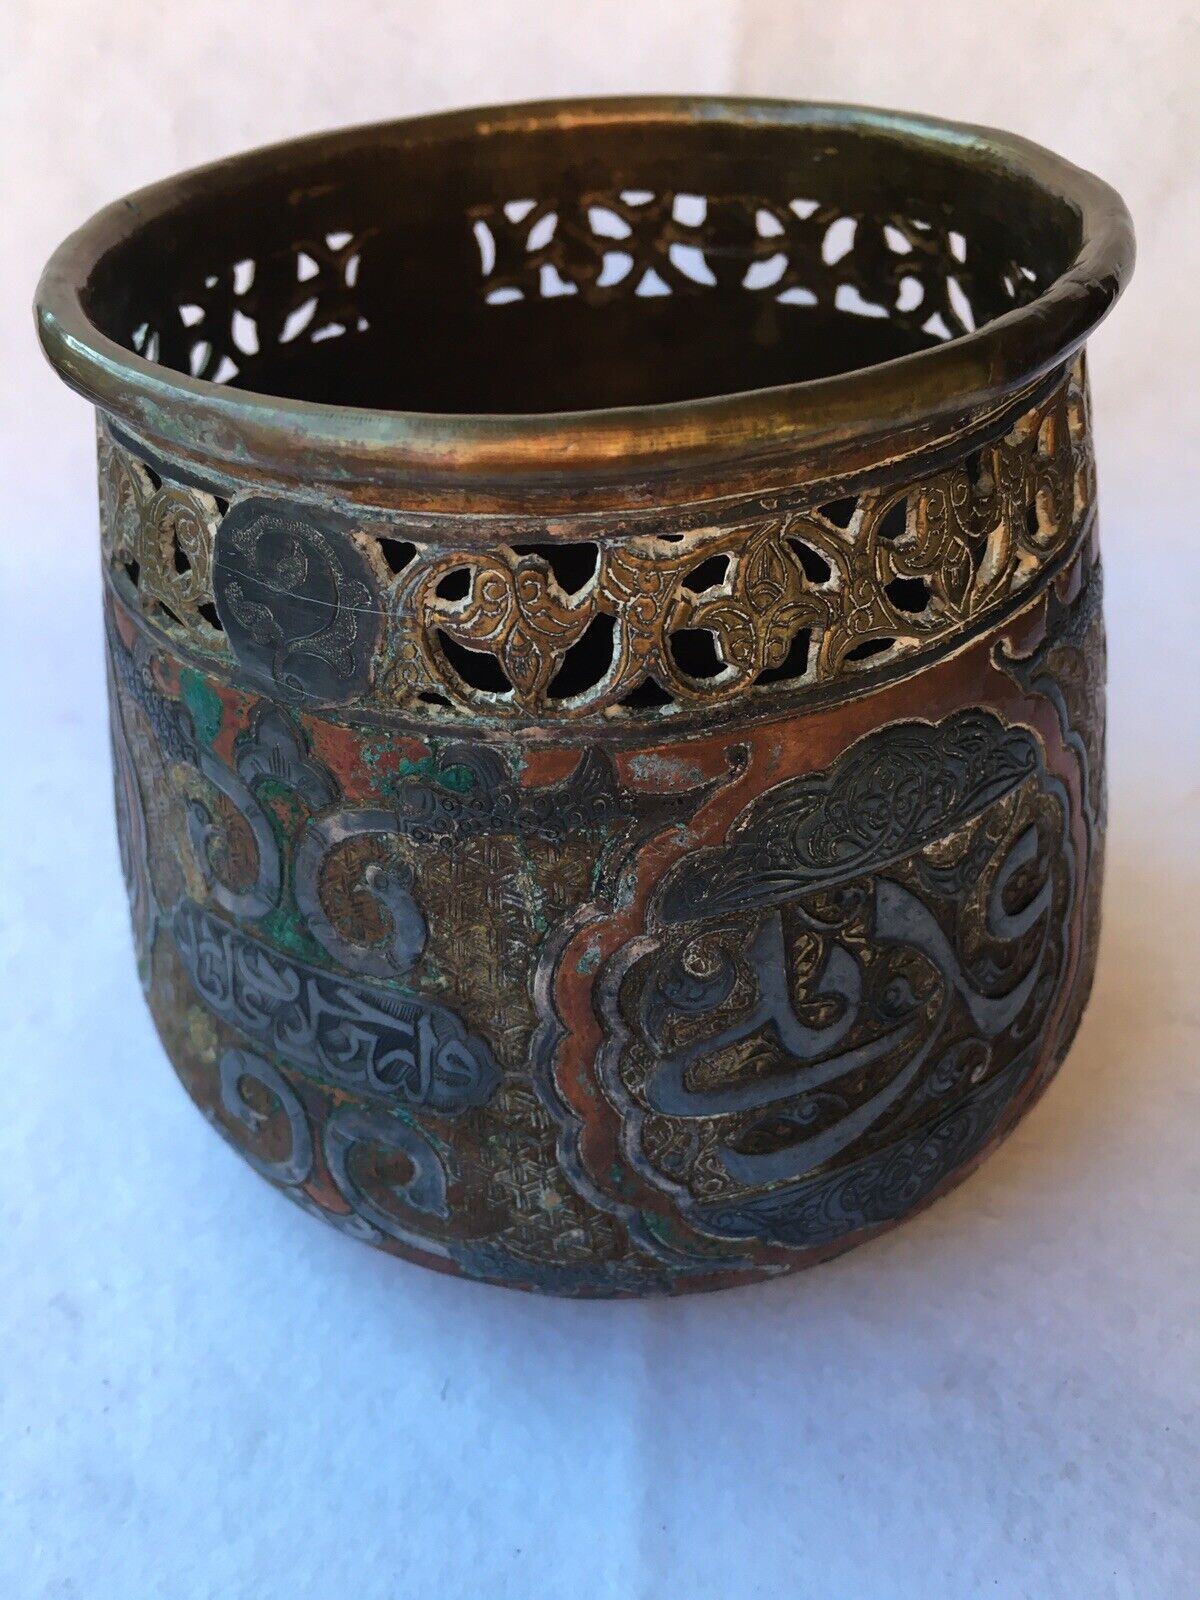 **SALE** Rare Antique Islamic Pierced Brass w/ Copper/Silver Inlay Bowl, Unique